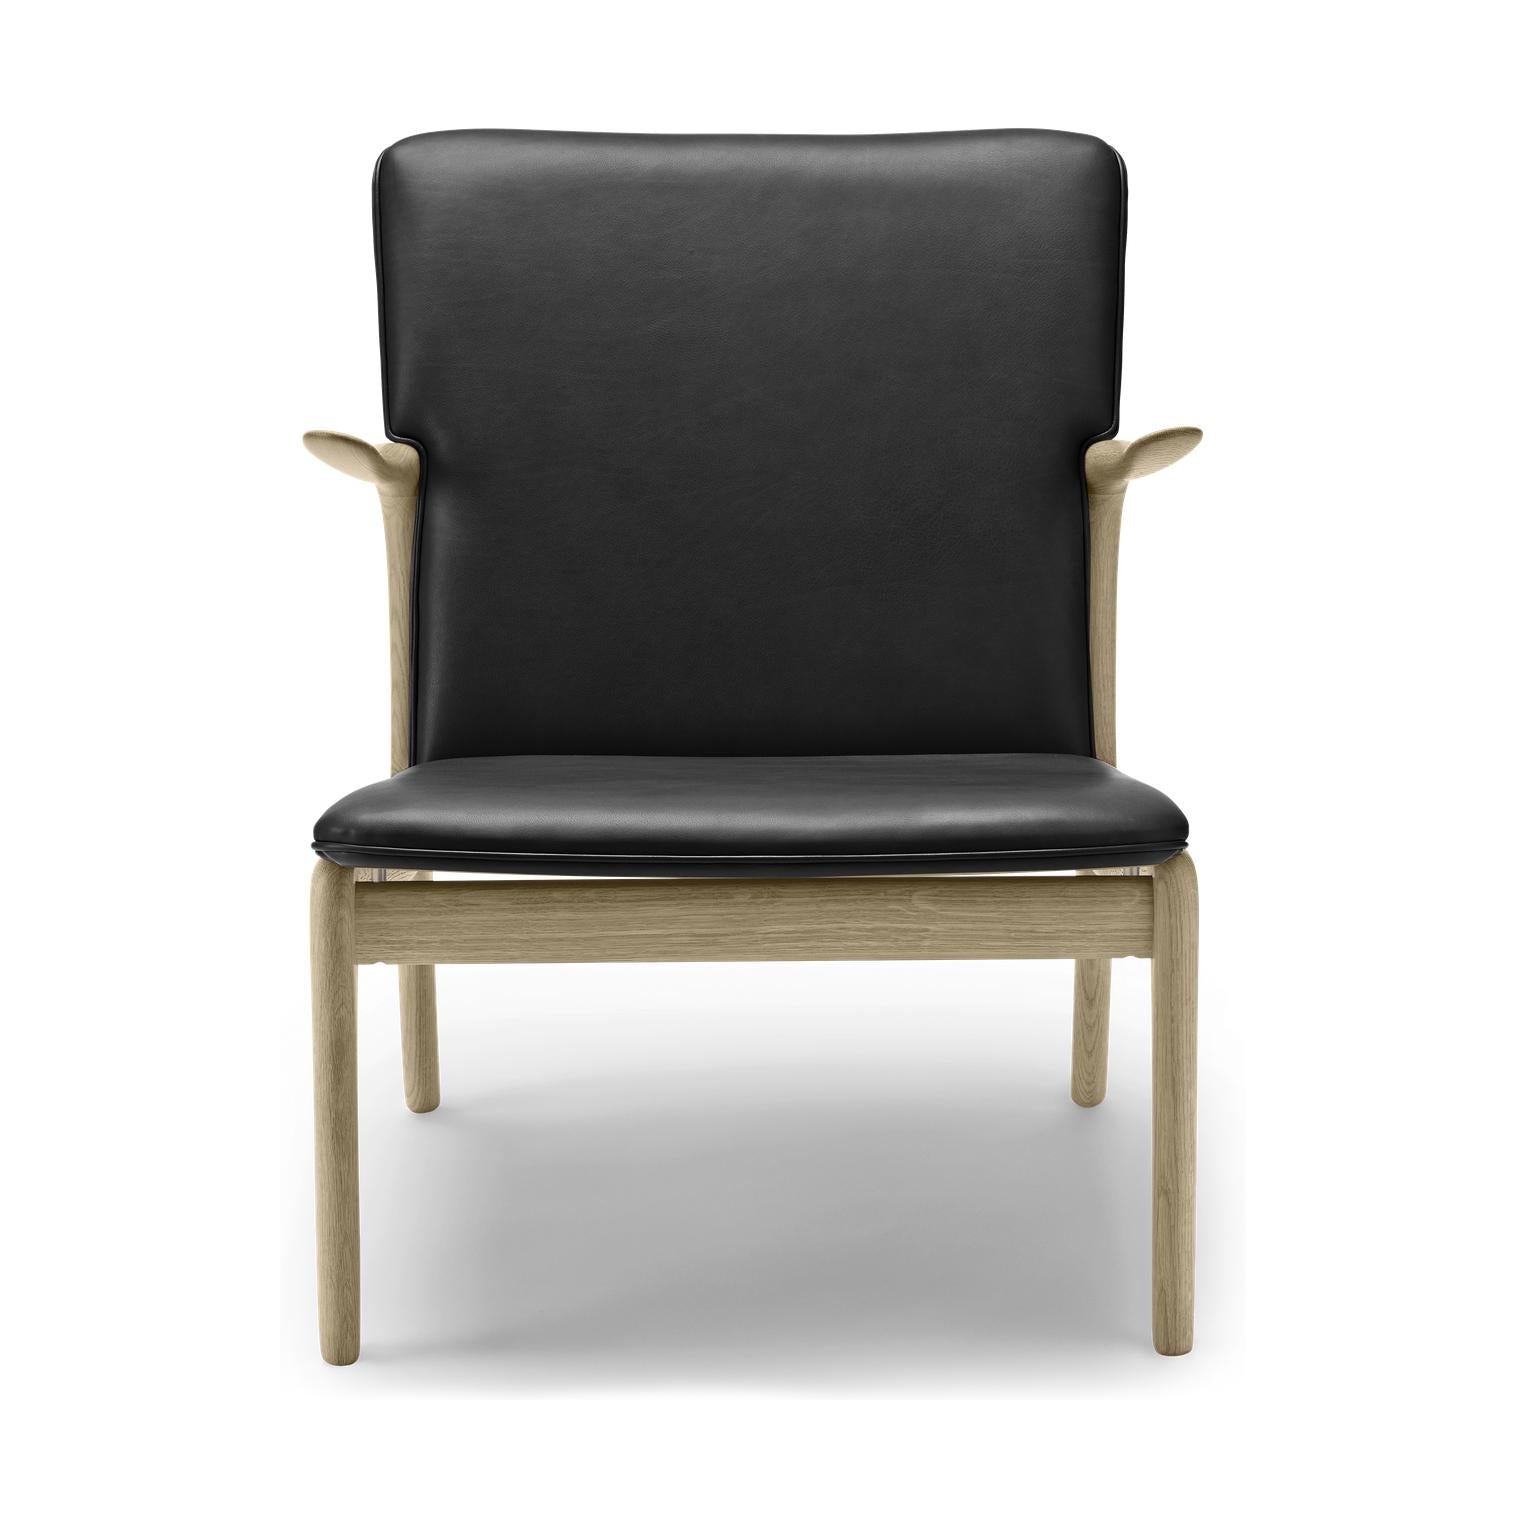 Carl Hansen Ow124 Beak Chair, chêne savonné/cuir noir